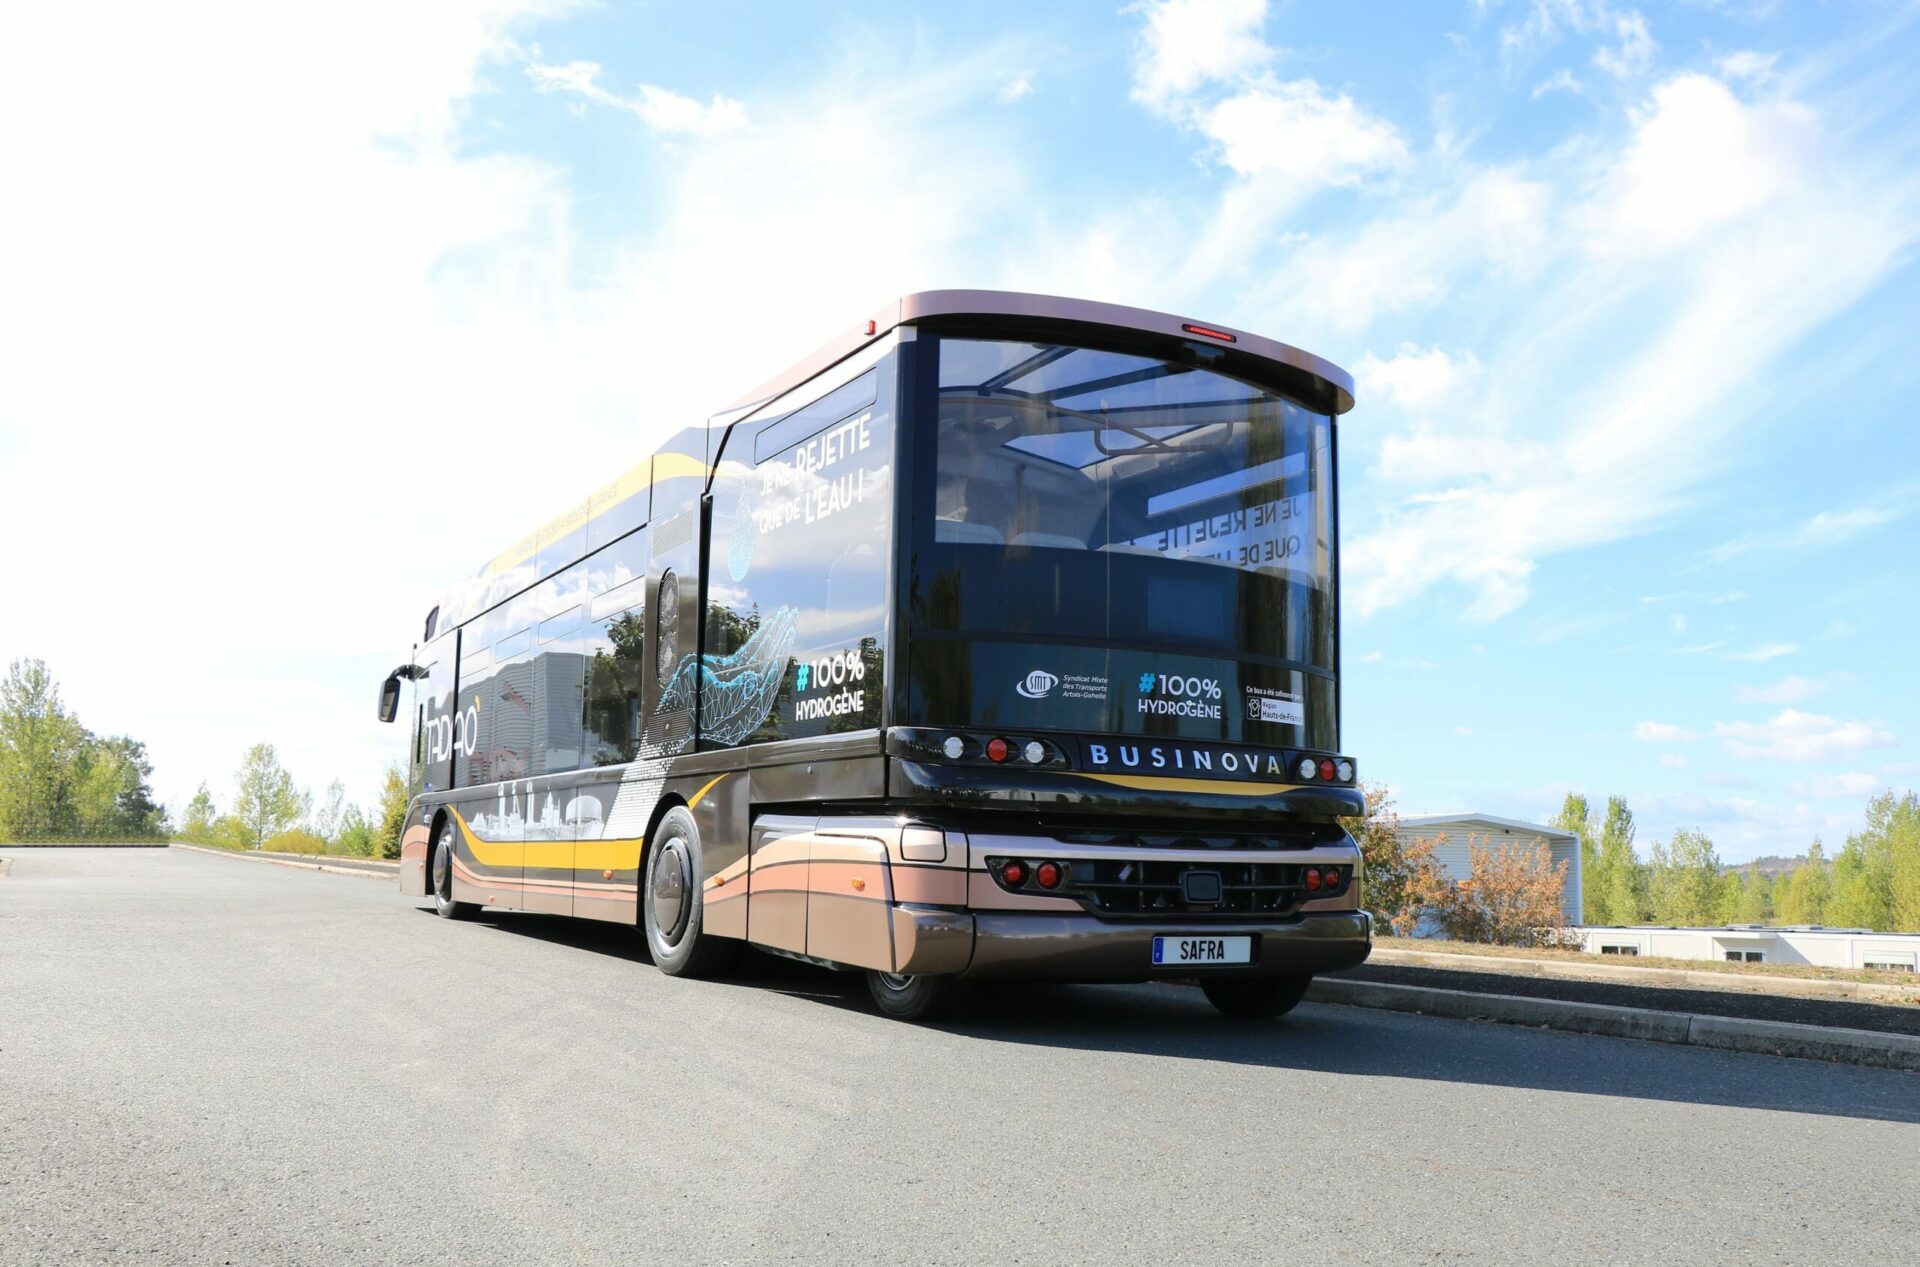 Lire la suite à propos de l’article La société SAFRA remporte un appel d’offre pour la fourniture de 6 autobus hydrogène